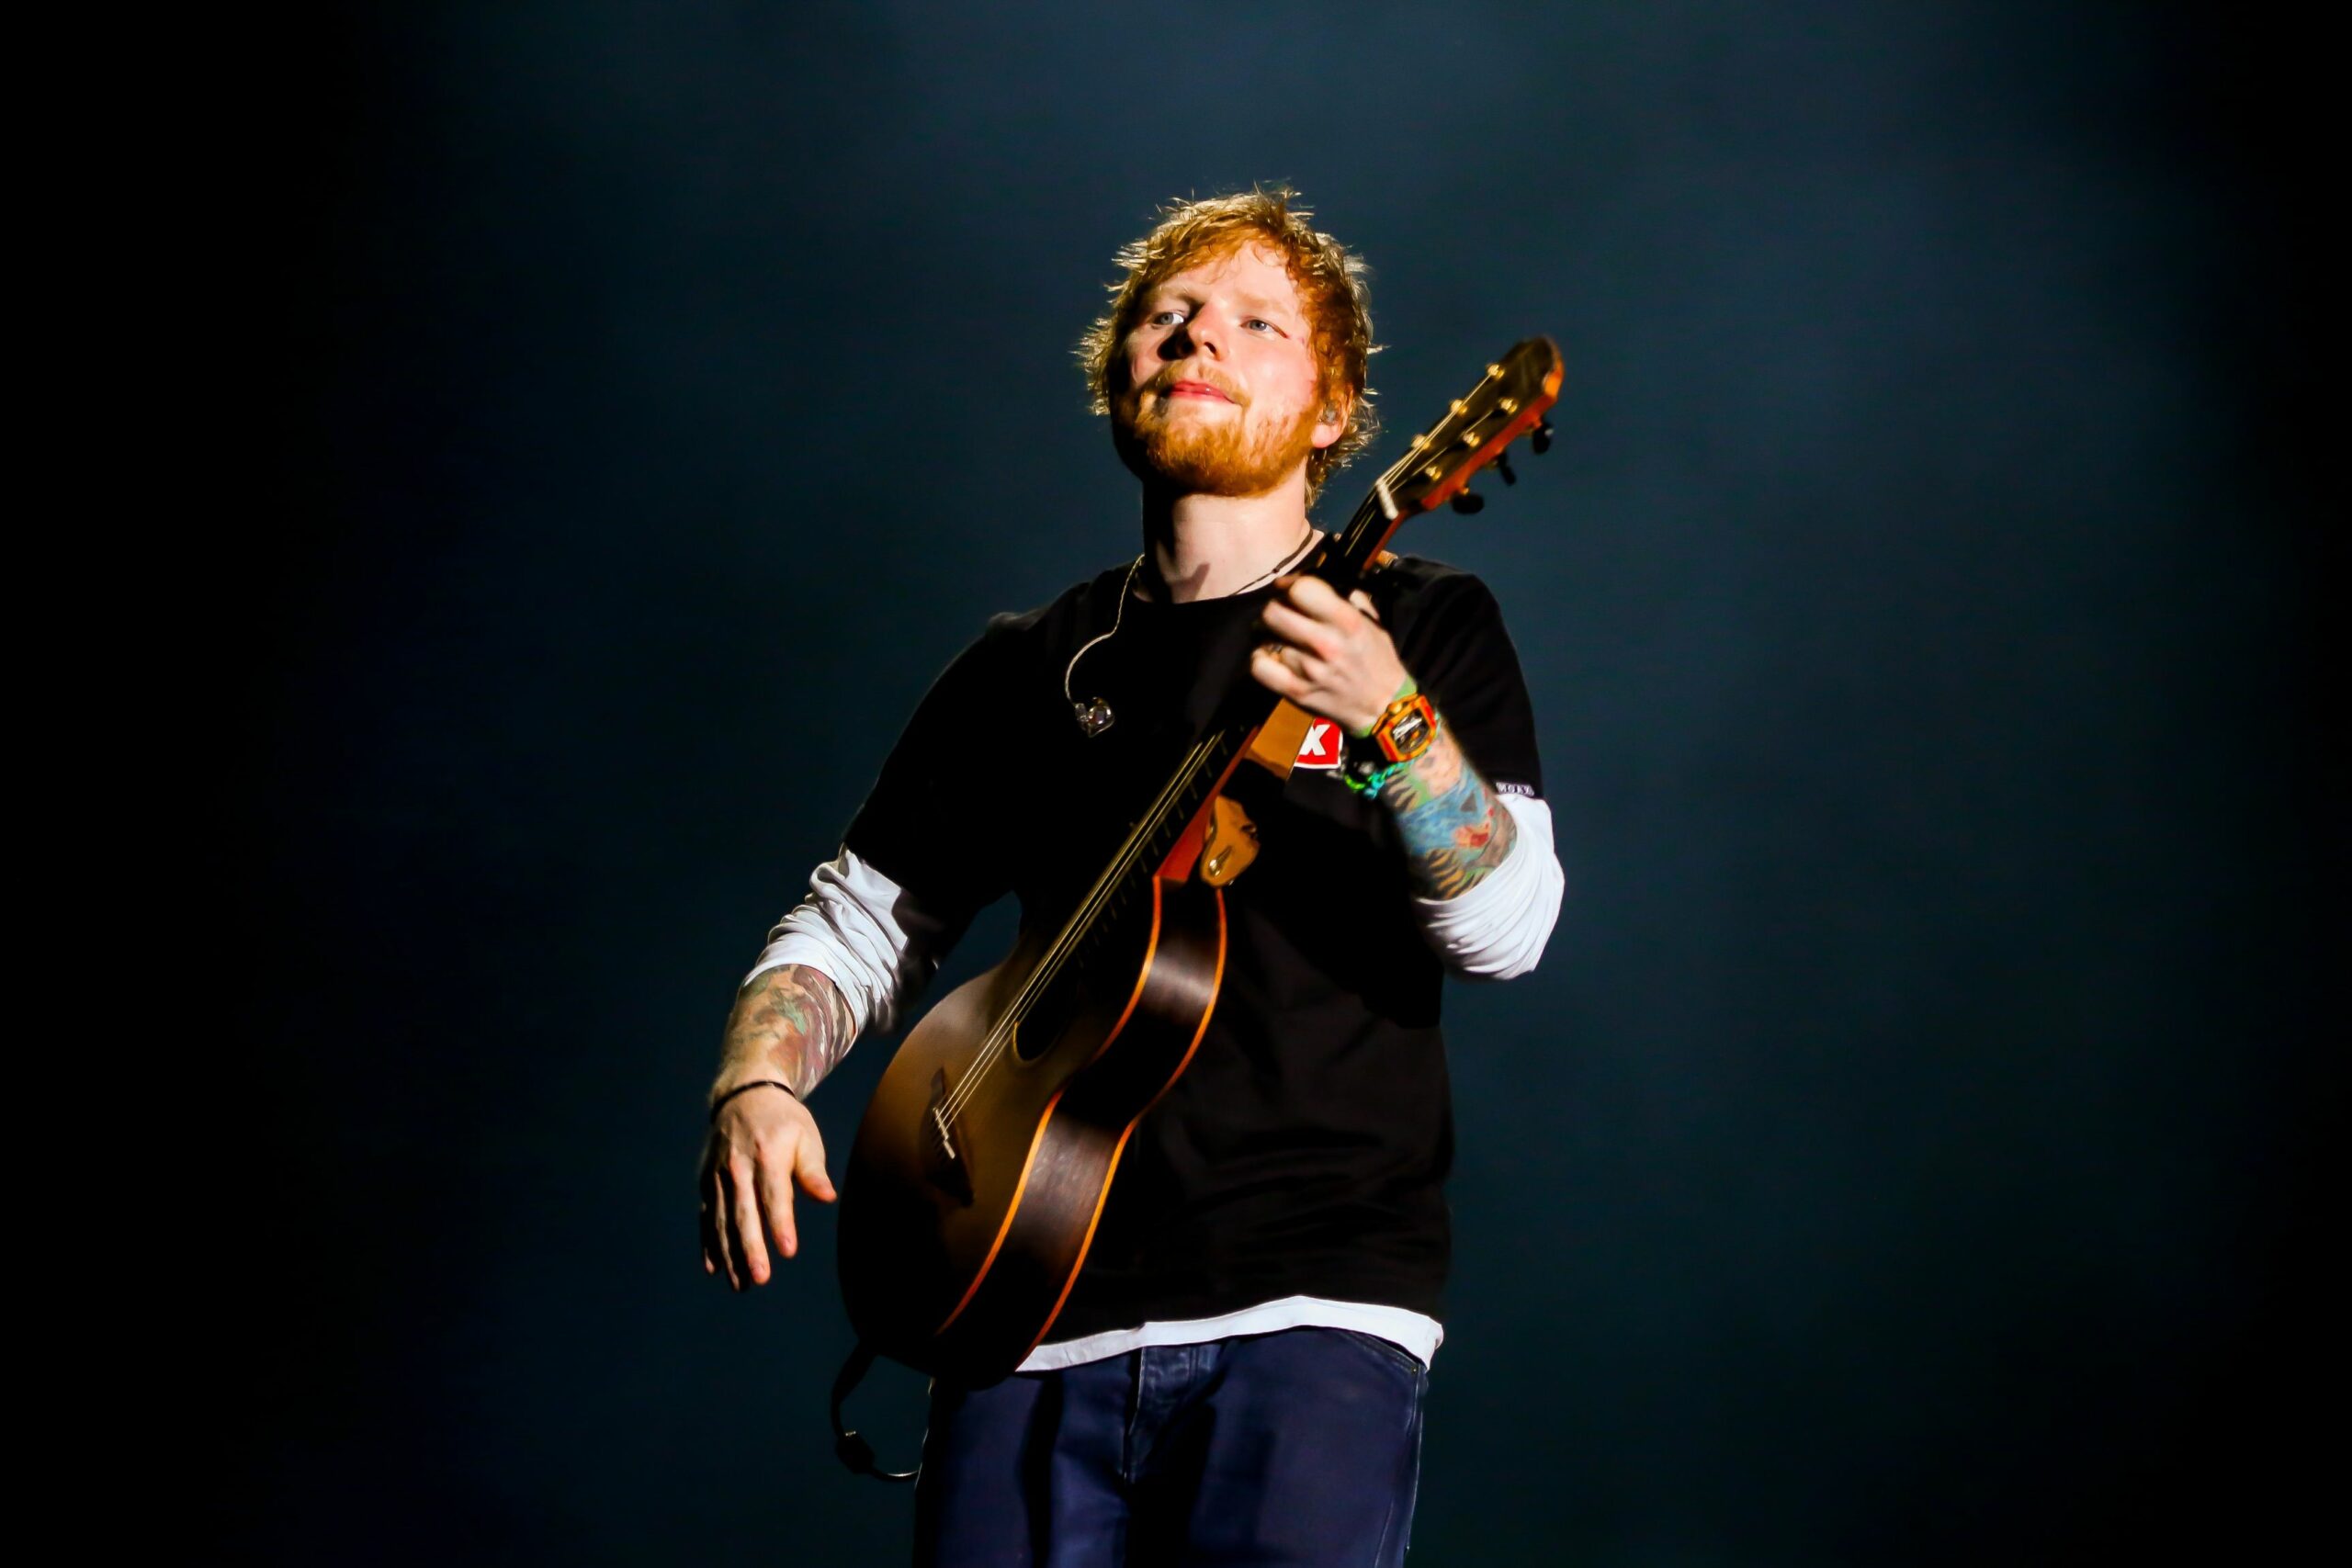 S-a lăsat cu lacrimi. Ed Sheeran a cântat o piesă compusă în carantină și a plâns. Ai văzut momentul?